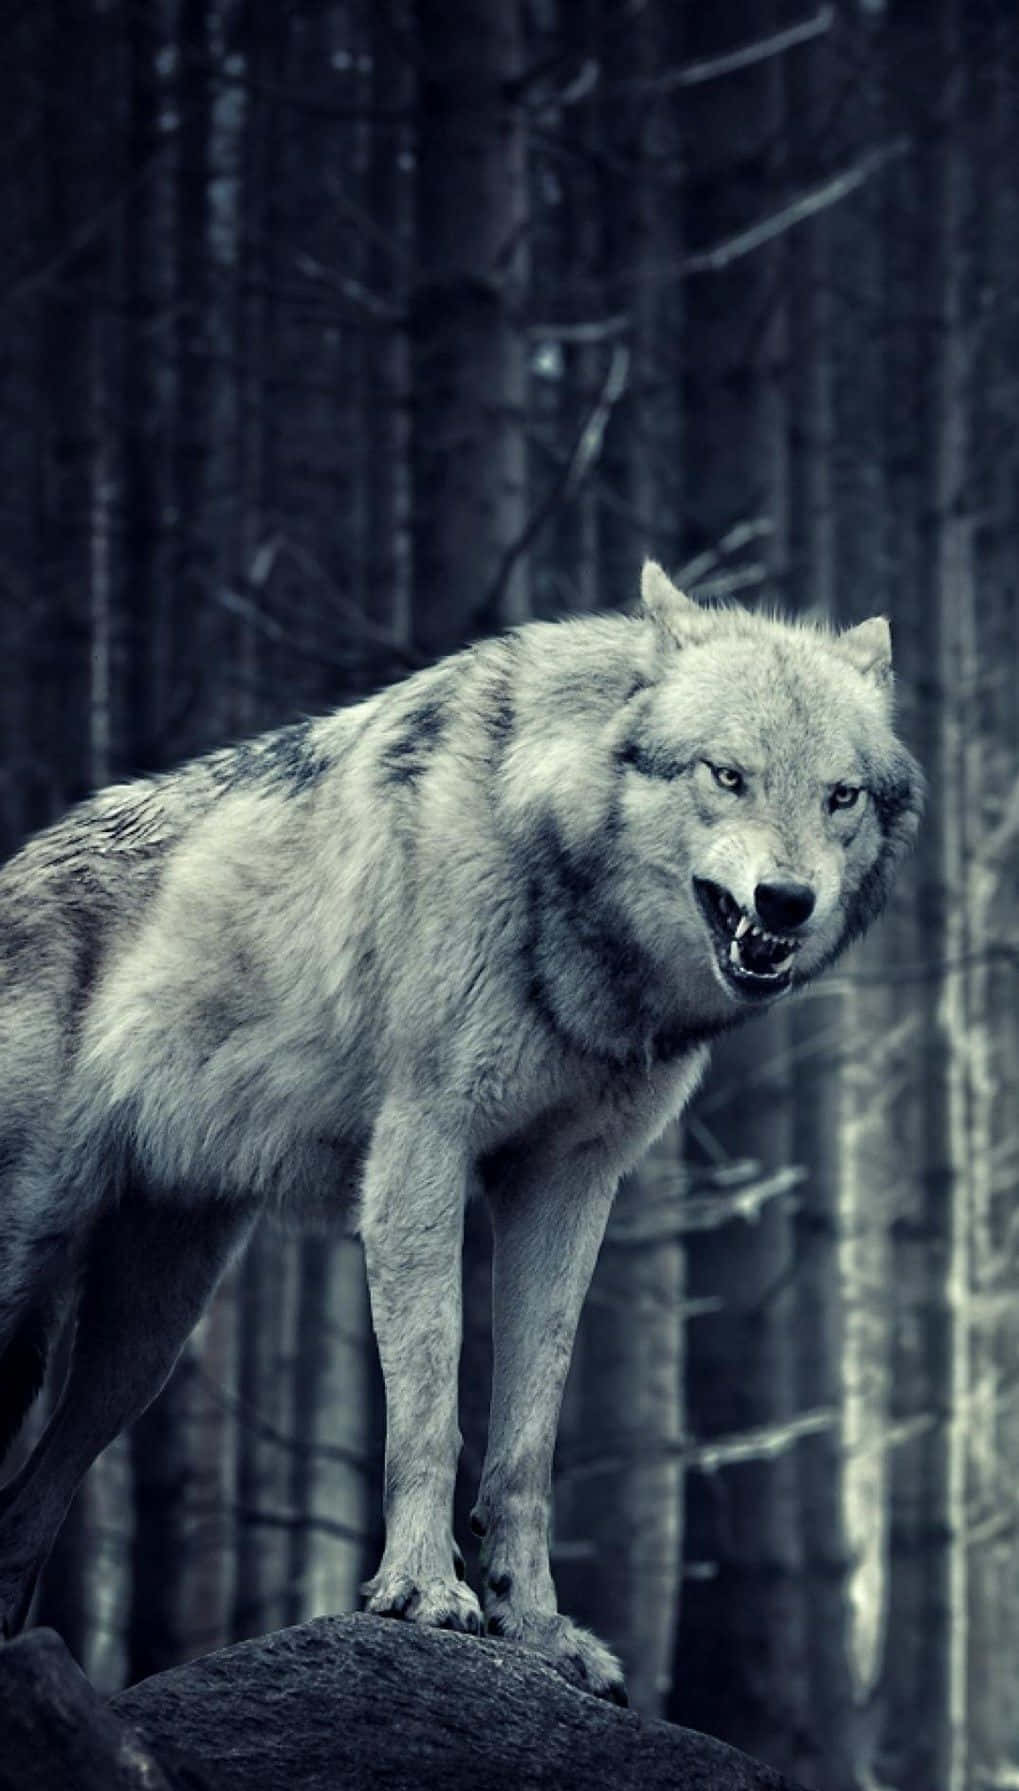 Einwolf Steht Im Wald. Wallpaper